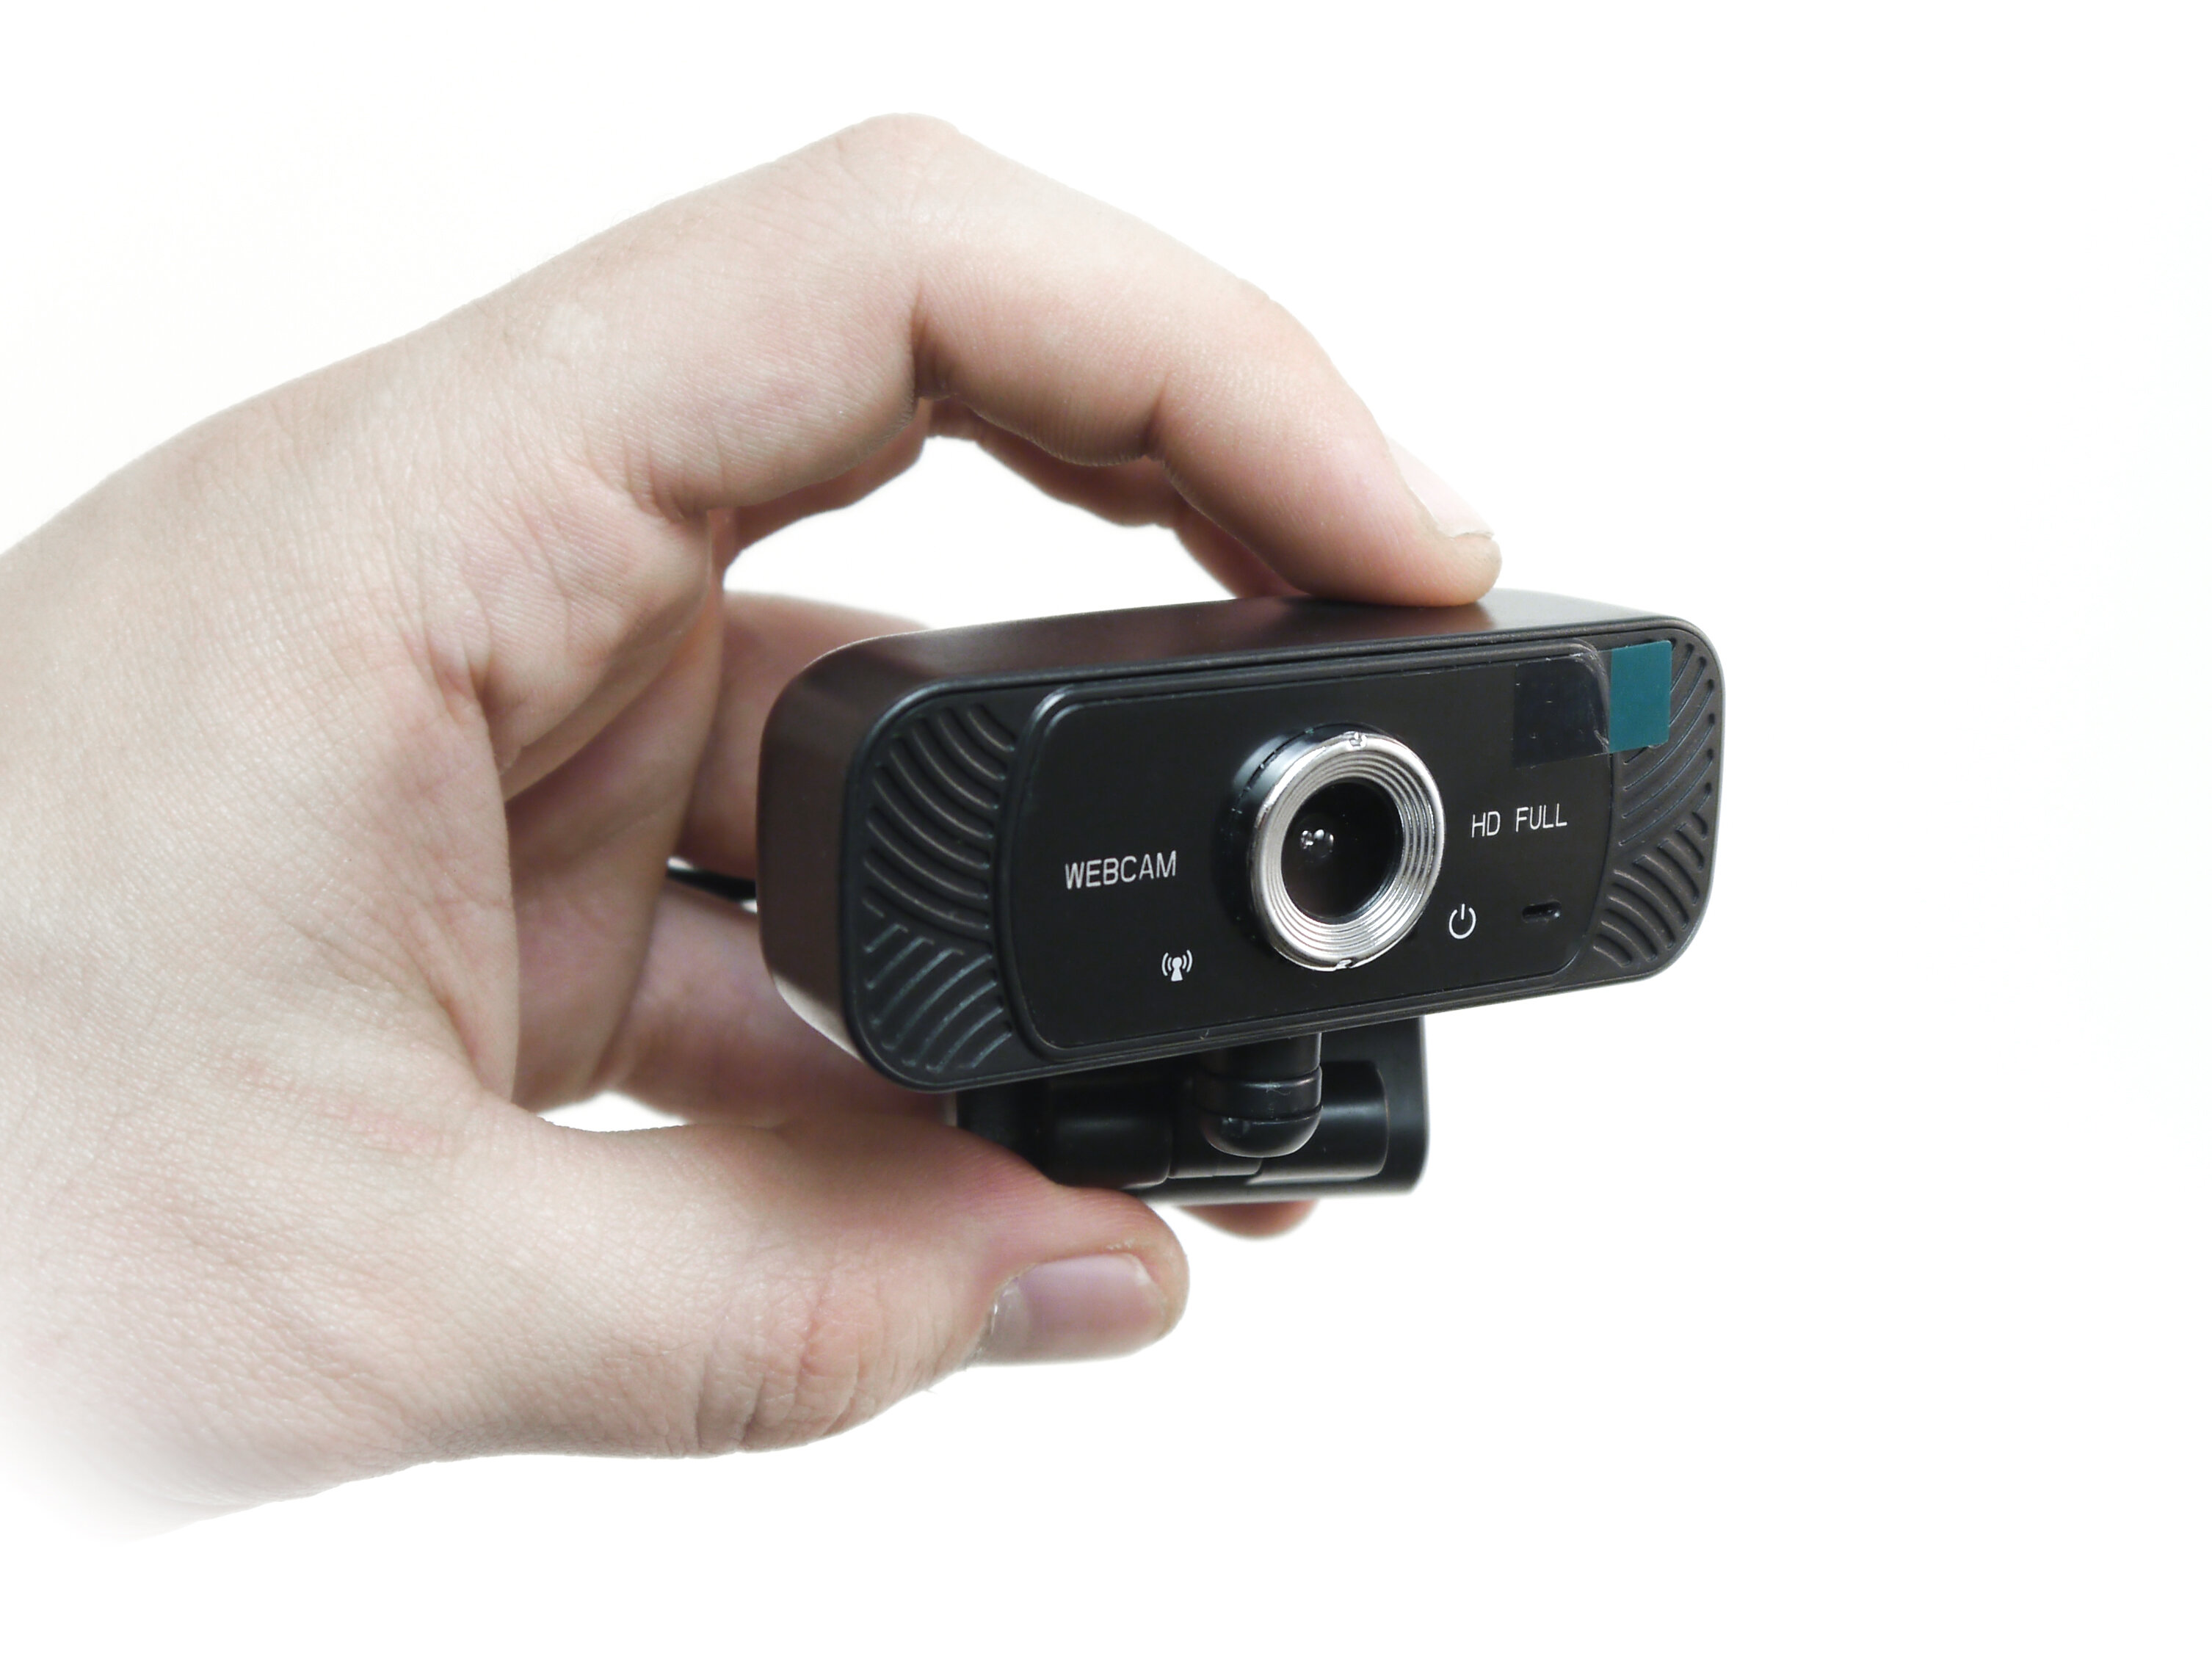 Веб камера 2K Full HD со звуком HDcom Webcam W19-2K - камера для видеоблога. Шторка для защиты от скрытой съемки.